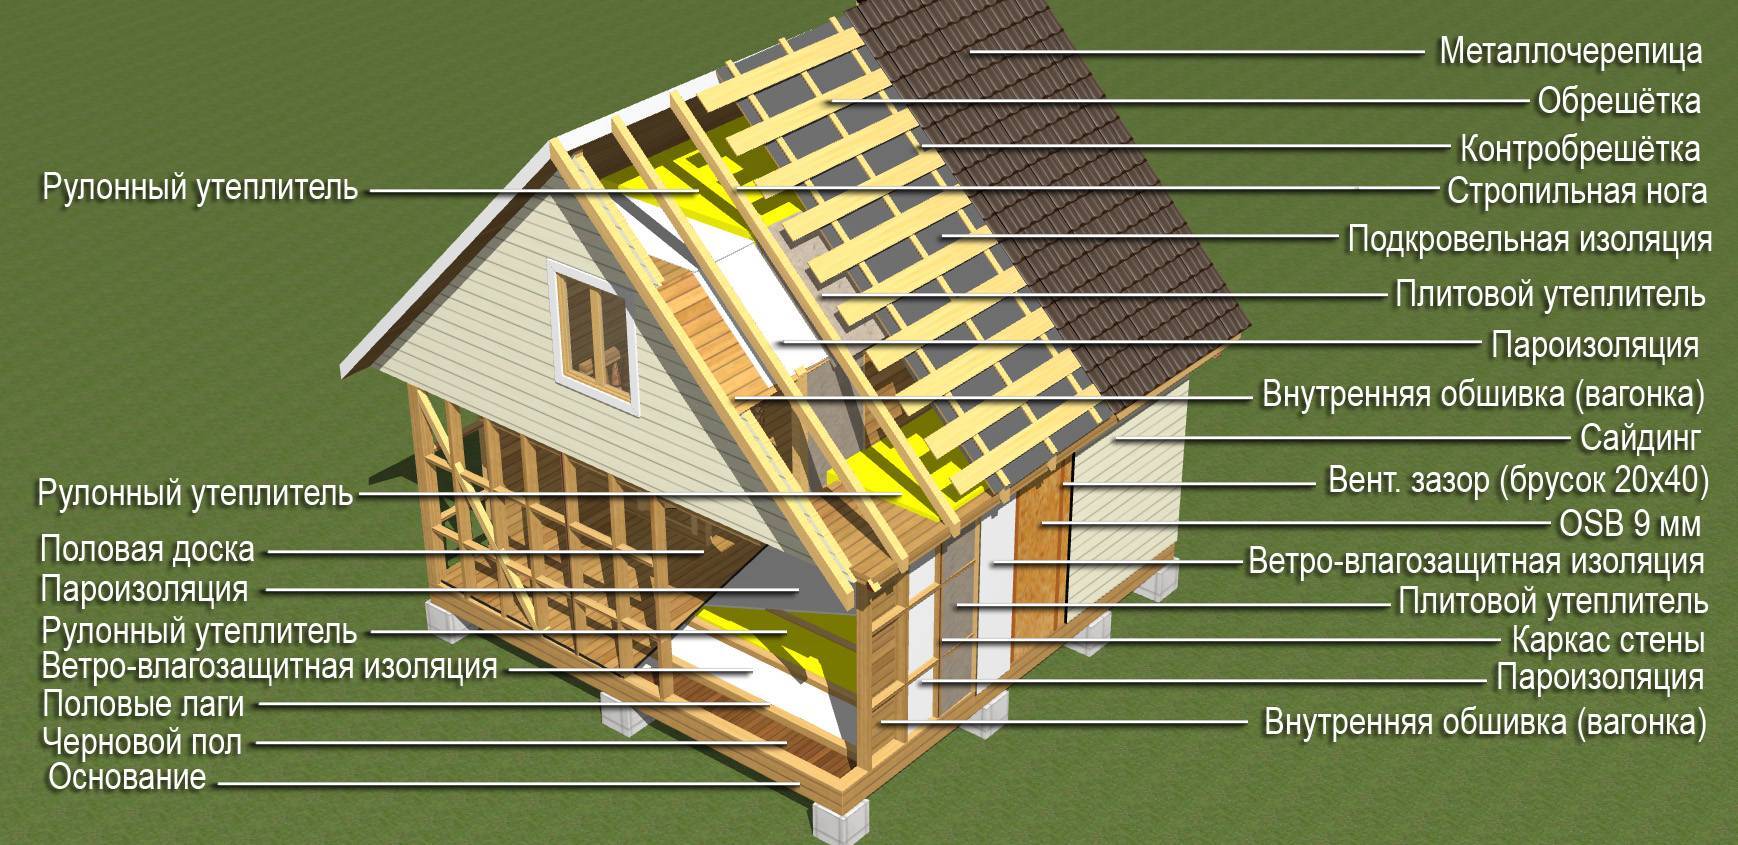 Строительство дома из бруса своими руками: пошаговая технология, видео инструкция